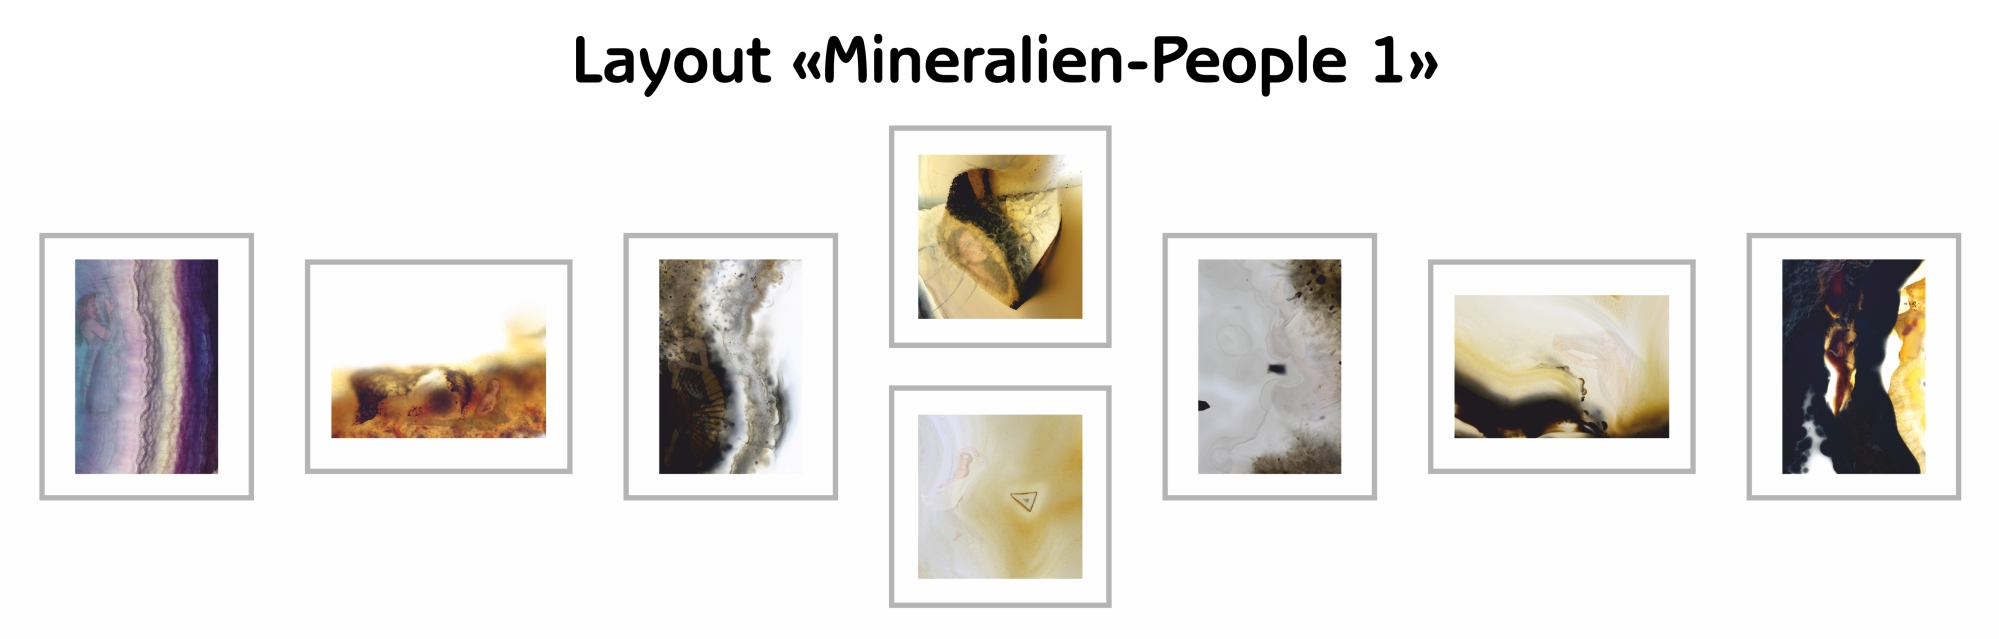 image-10217777-Layout-Mineralien-People-1-6512b.jpg